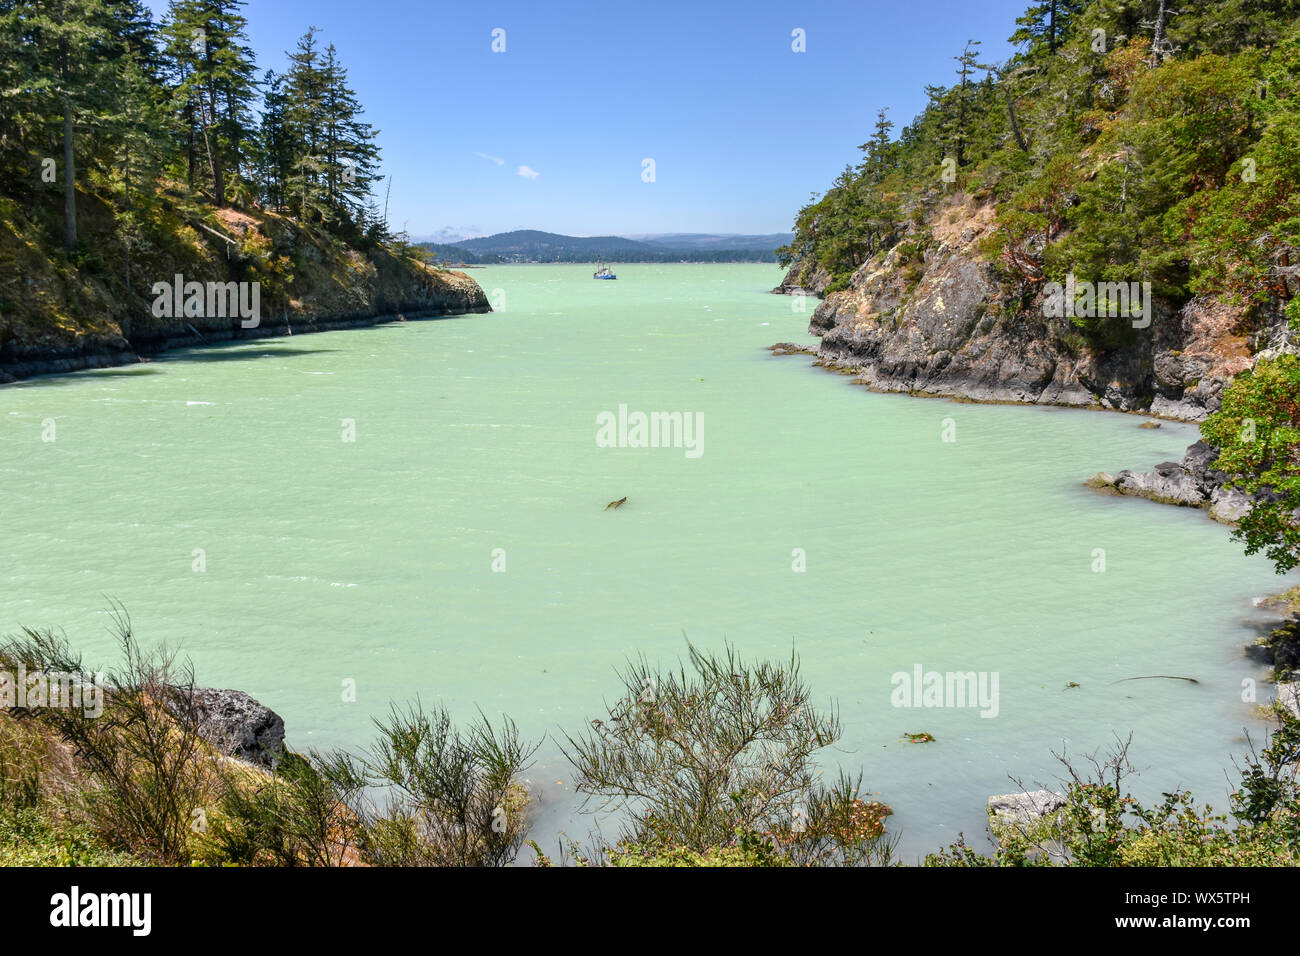 2016 traf eine Algenblüte das Sooke Basin und die umliegende Küste von Vancouver Island, was einen blauen, grünen Farbton ins Wasser brachte. Stockfoto